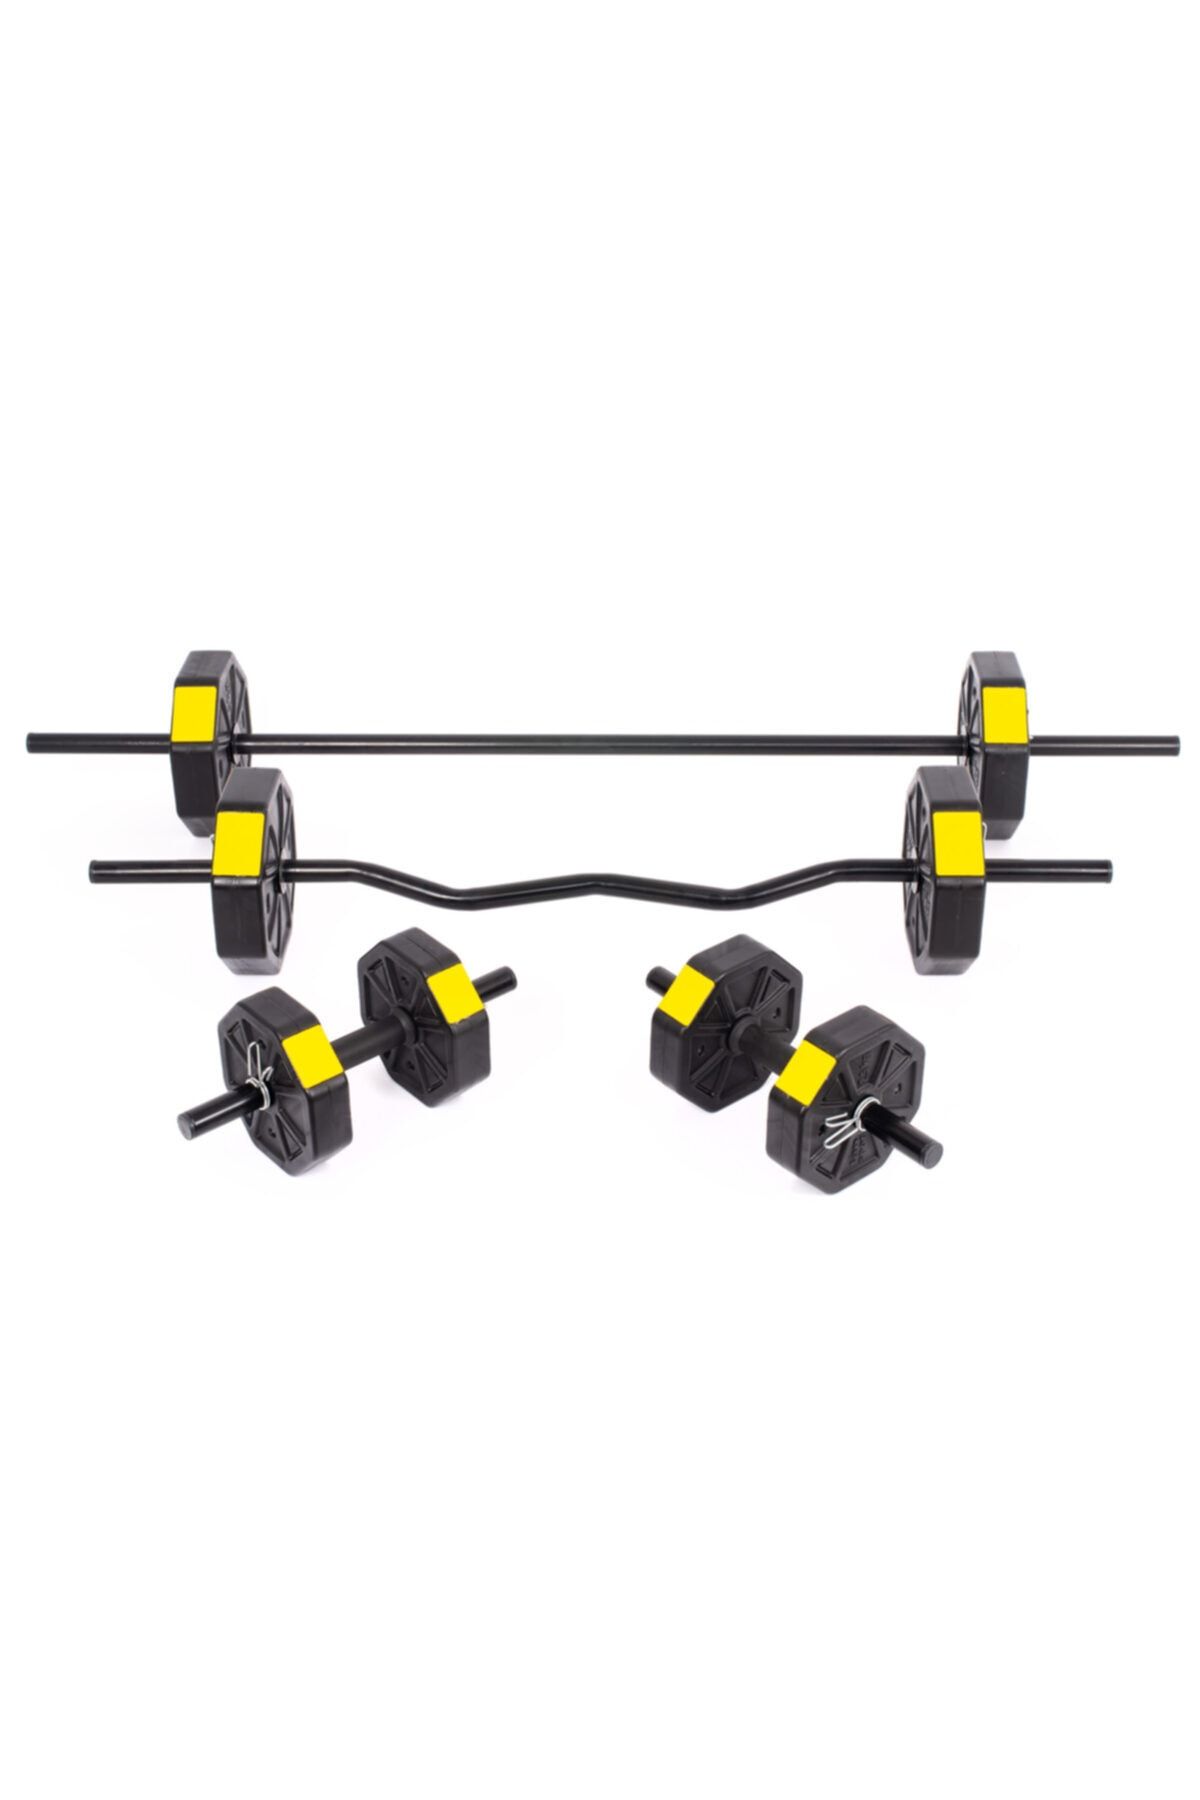 TAN SPOR 30 Kg (150 CM) Düz Bar Z Bar Dambıl-dumbell-ağırlık-halter–full Set Sarı Kapaklı